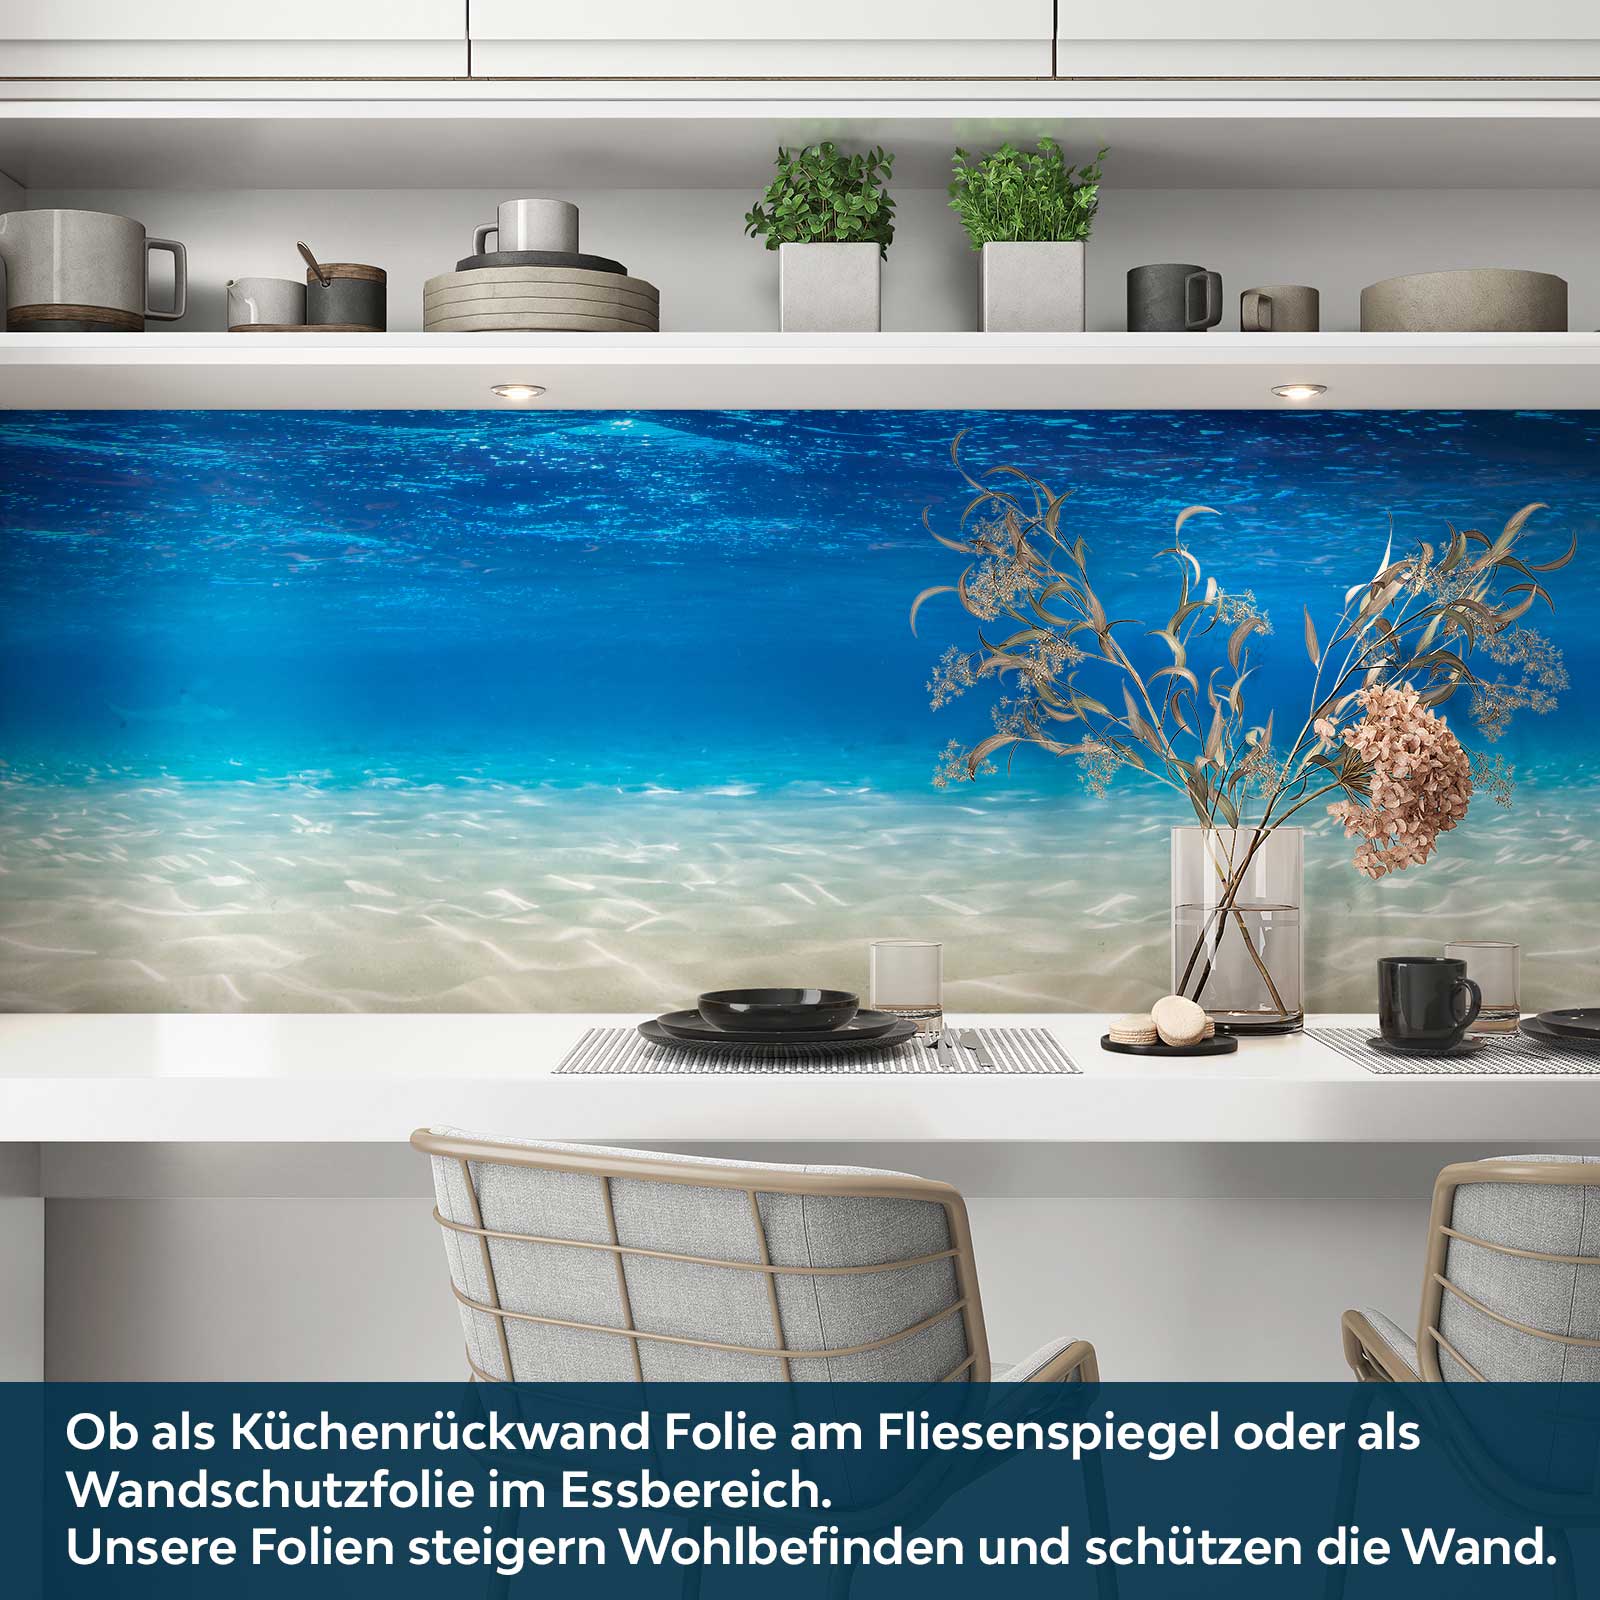 https://www.folien21.de/images/product_images/original_images/kuechenrueckwand-folie/landschaften/142/kuechenrueckwand-folie-selbstklebend-ocean-a3.jpg